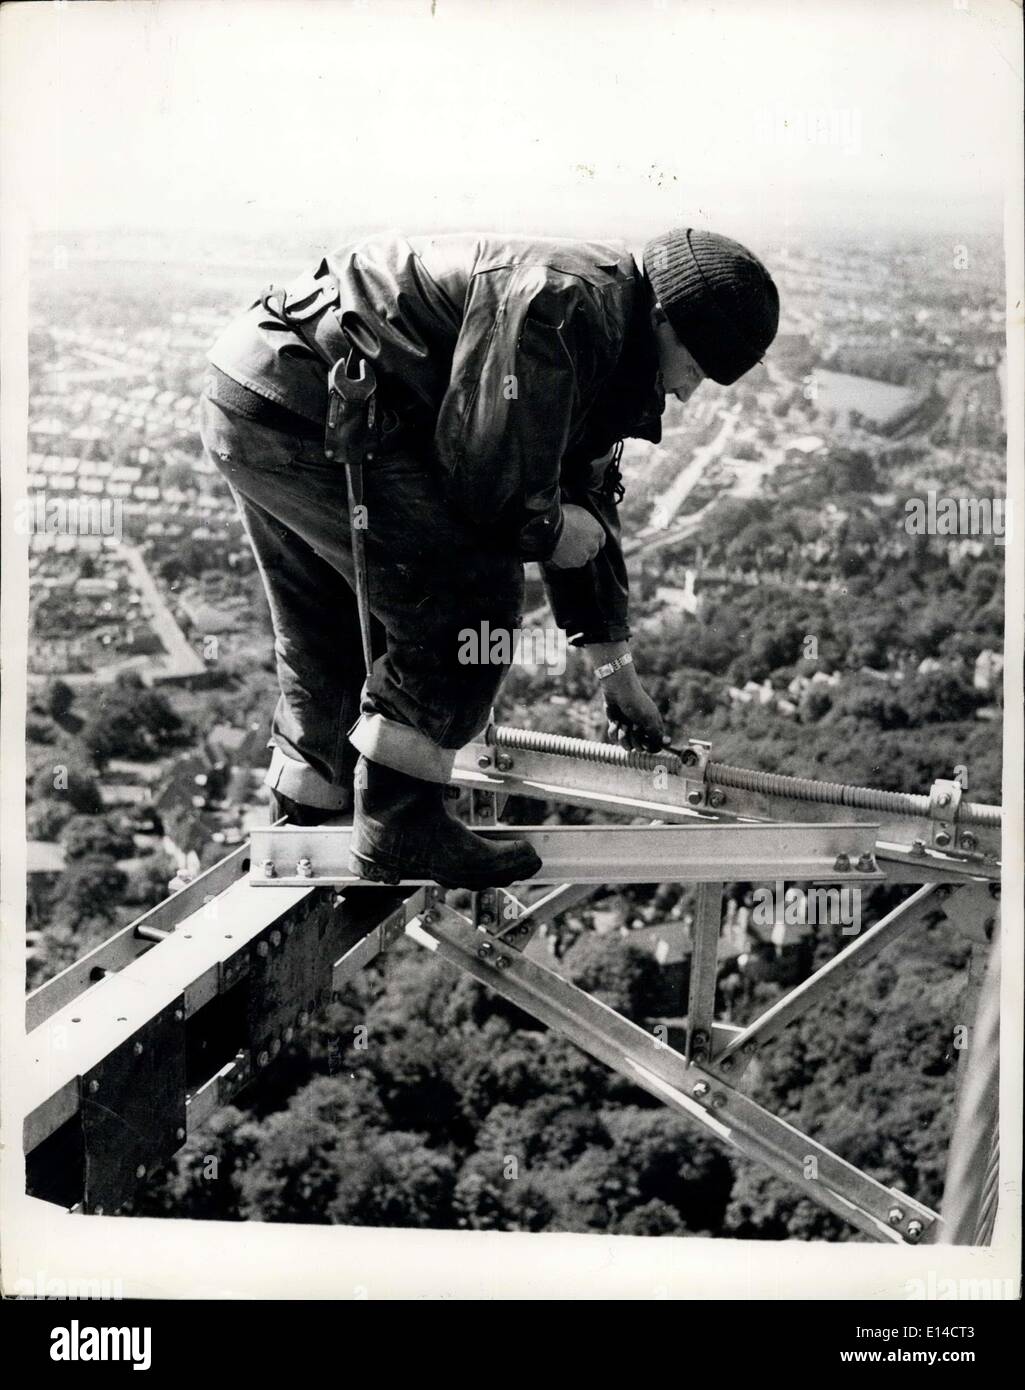 Le 17 avril 2012 - sur les Hauteurs de mât de télévision le dernier, les travaux de construction à Crystal Palace. Les hommes les plus élevés à Londres ces jours sont les ''pidermen'' travailler sur le nouveau mât de télévision sur le site de l'ancien Palais de Cristal. Une fois terminé le mât sera 650 m de hauteur. Les antennes sont à 440 ft. et transmettra à rendre des "points lumineux' du 'points noirs' dans la couverture télévisuelle du sud de l'Angleterre. La tour a débuté en avril 1955. Les fondations descendre 50 pieds dans ce qui était autrefois le palais de cristal piscine nautique. La sortie sera200 Kws, quatre fois le couvercle existant Banque D'Images